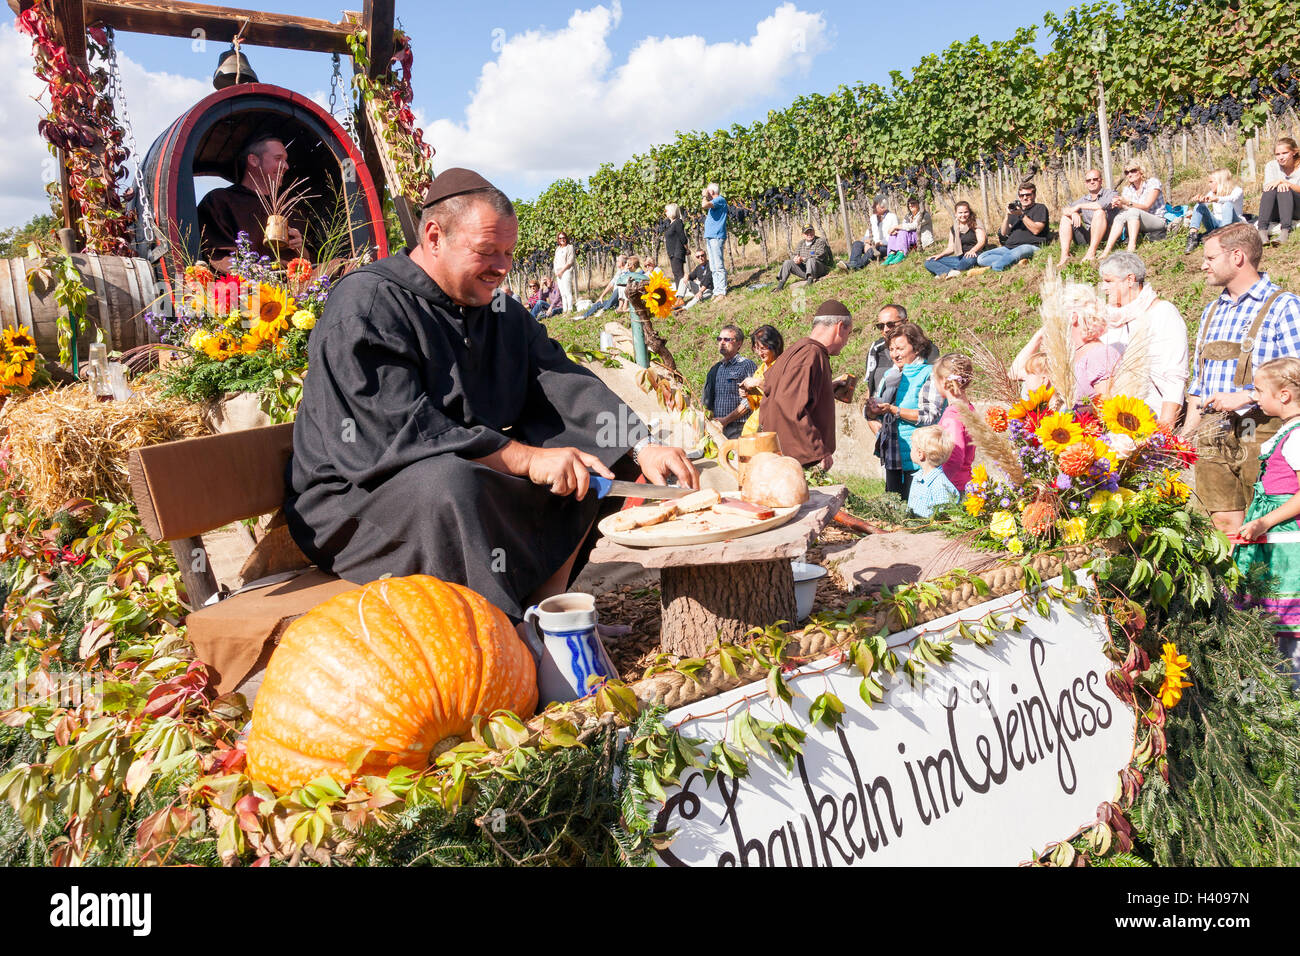 Traditionelles Wein- und Erntedankfest, Sasbachwalden, Baden-Württemberg, Süddeutschland, Deutschland, Europa Stockfoto